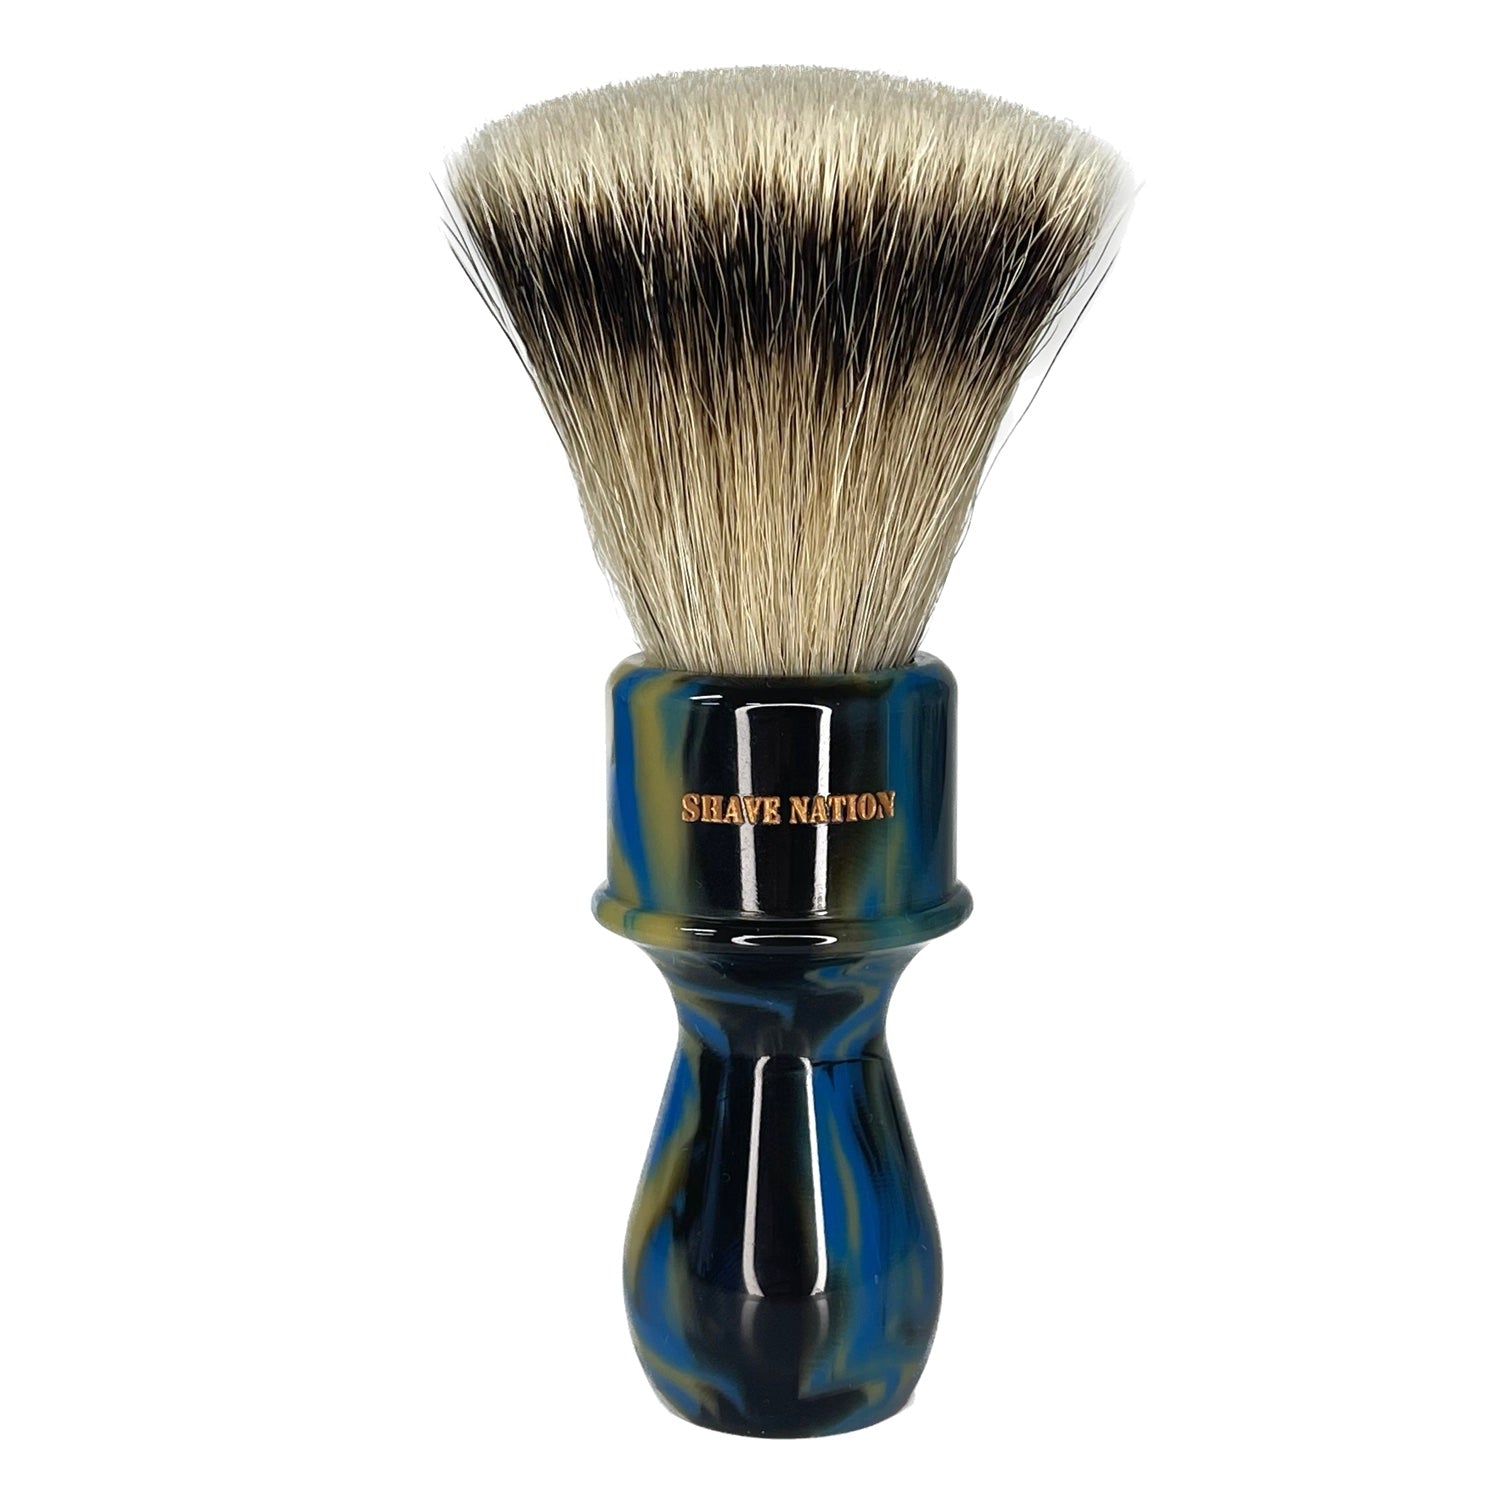 Shave Nation FLATBOY Silvertip Badger Shaving Brush